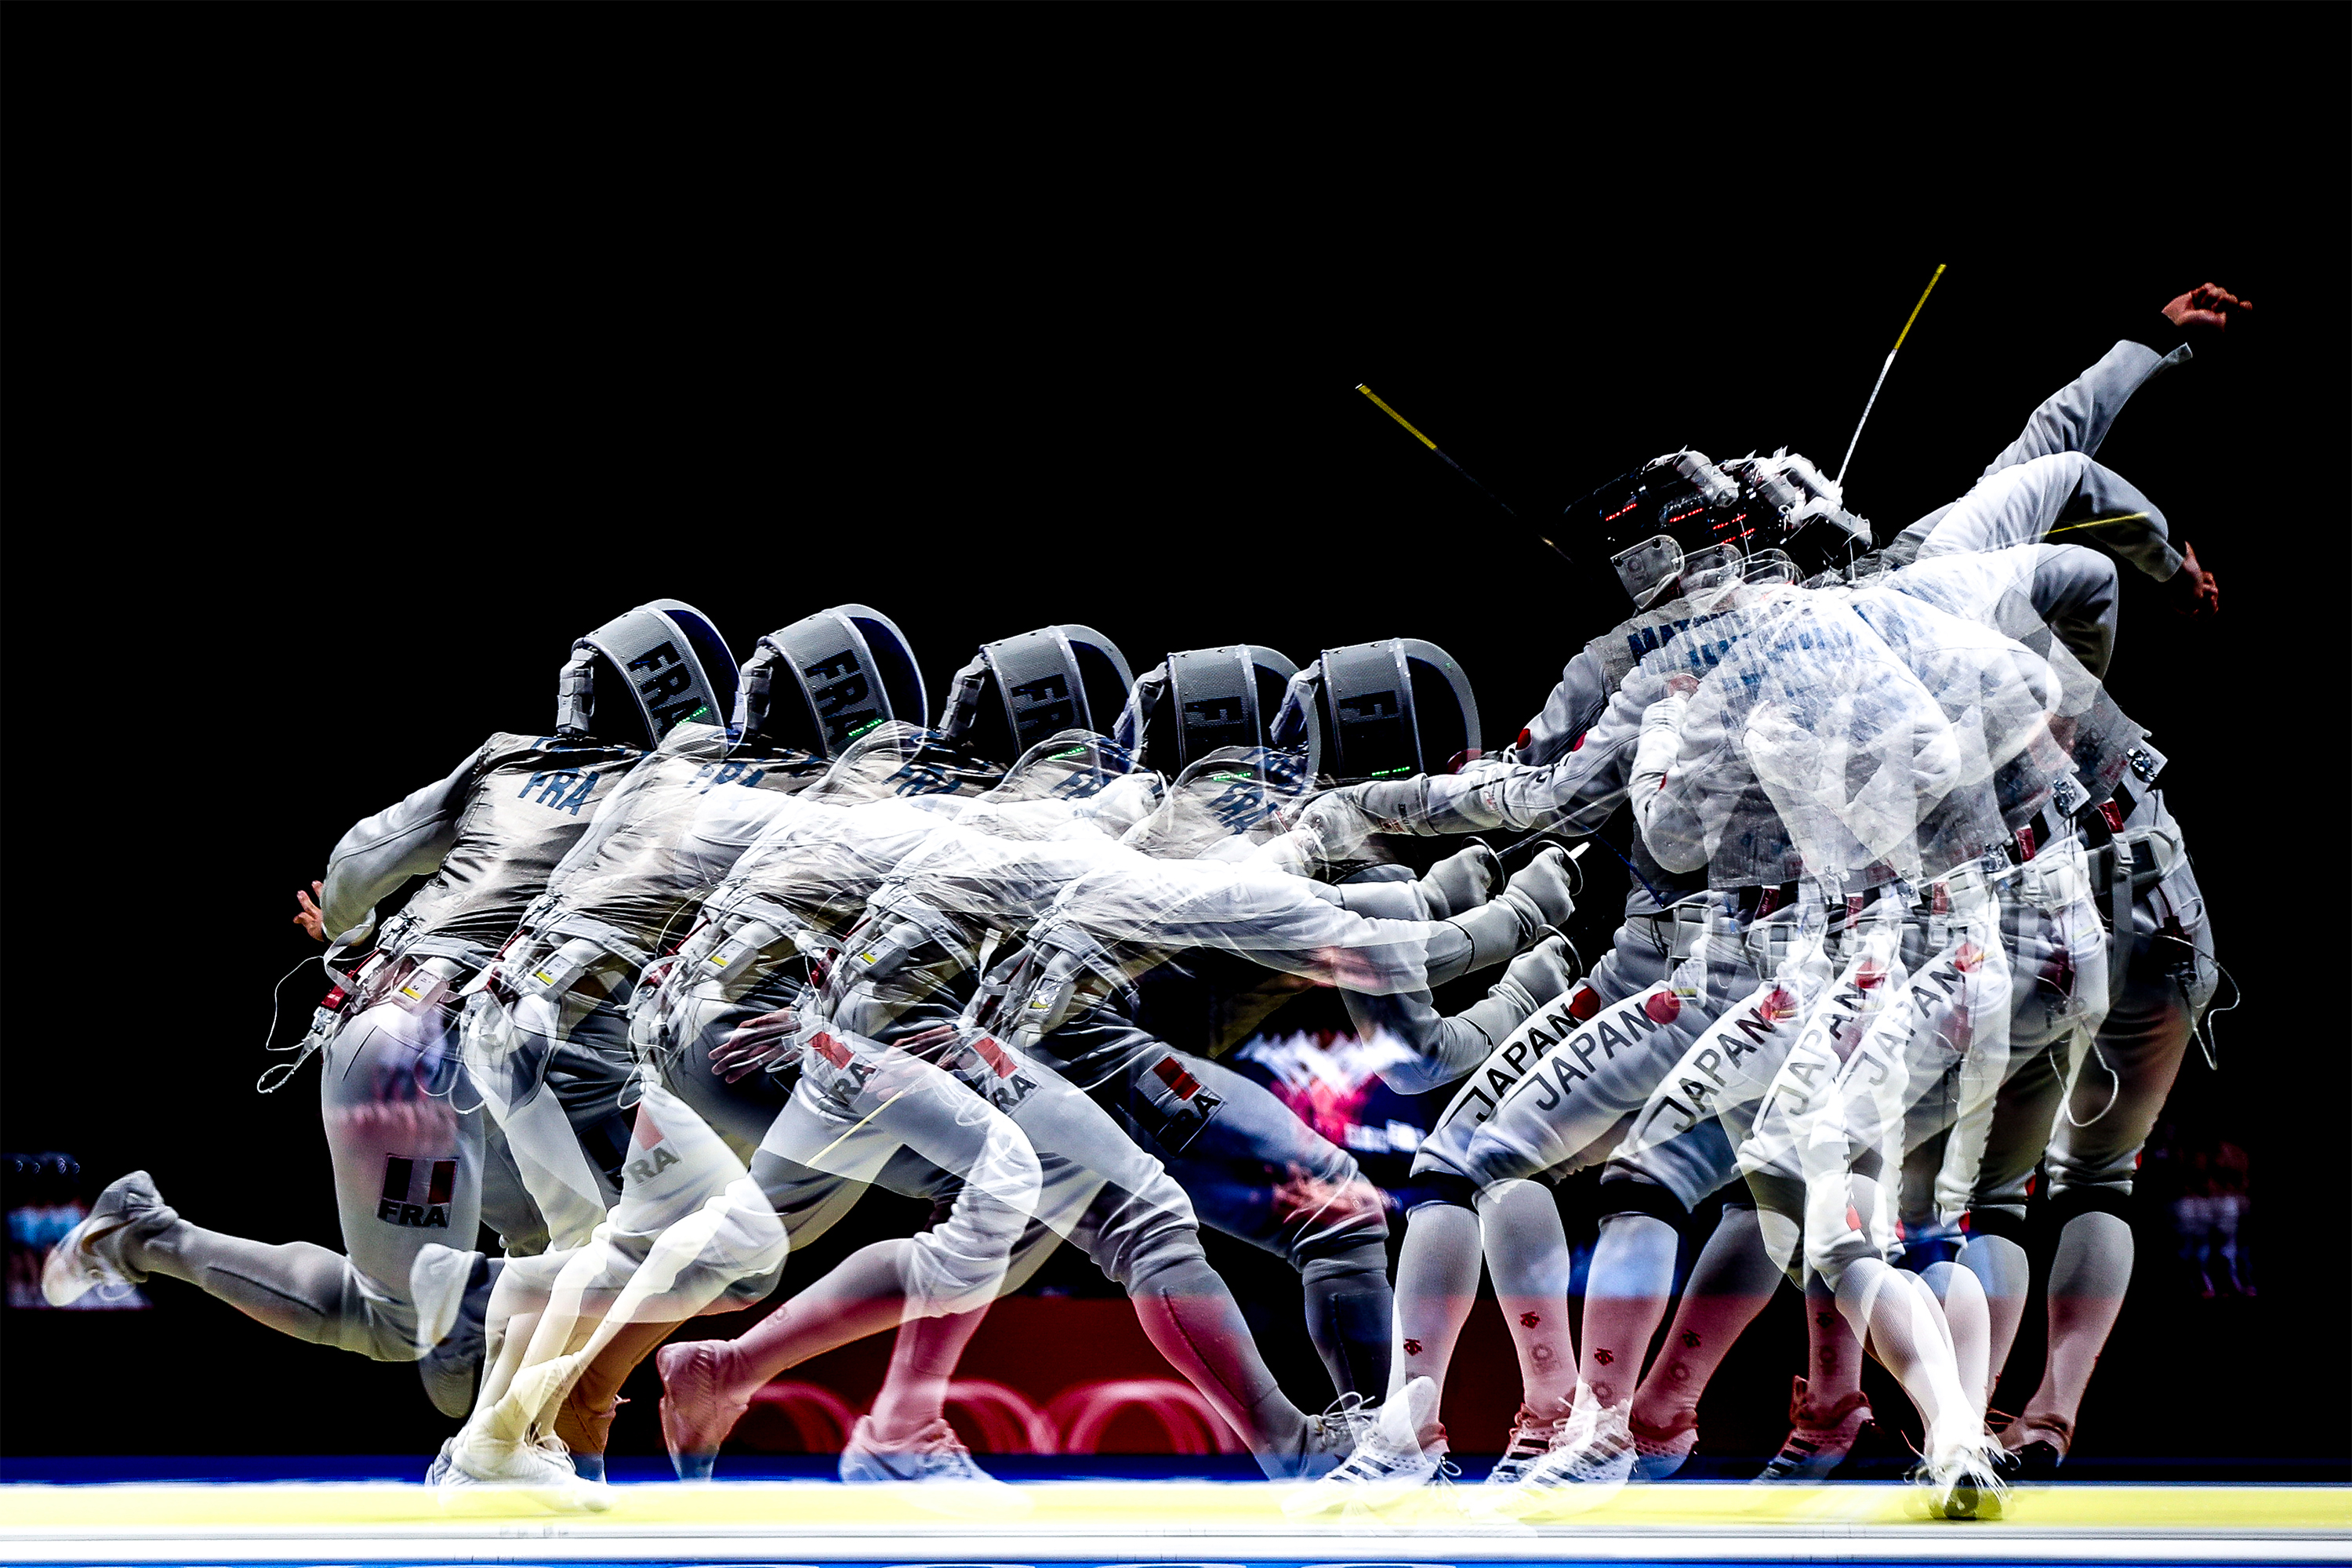 26.07.2021 - Jogos Olímpicos Tóquio 2020 - Esgrima Masculino - Arma - Florete - Na foto o atleta Guilherme Toldo - Foto: Gaspar Nóbrega/COB